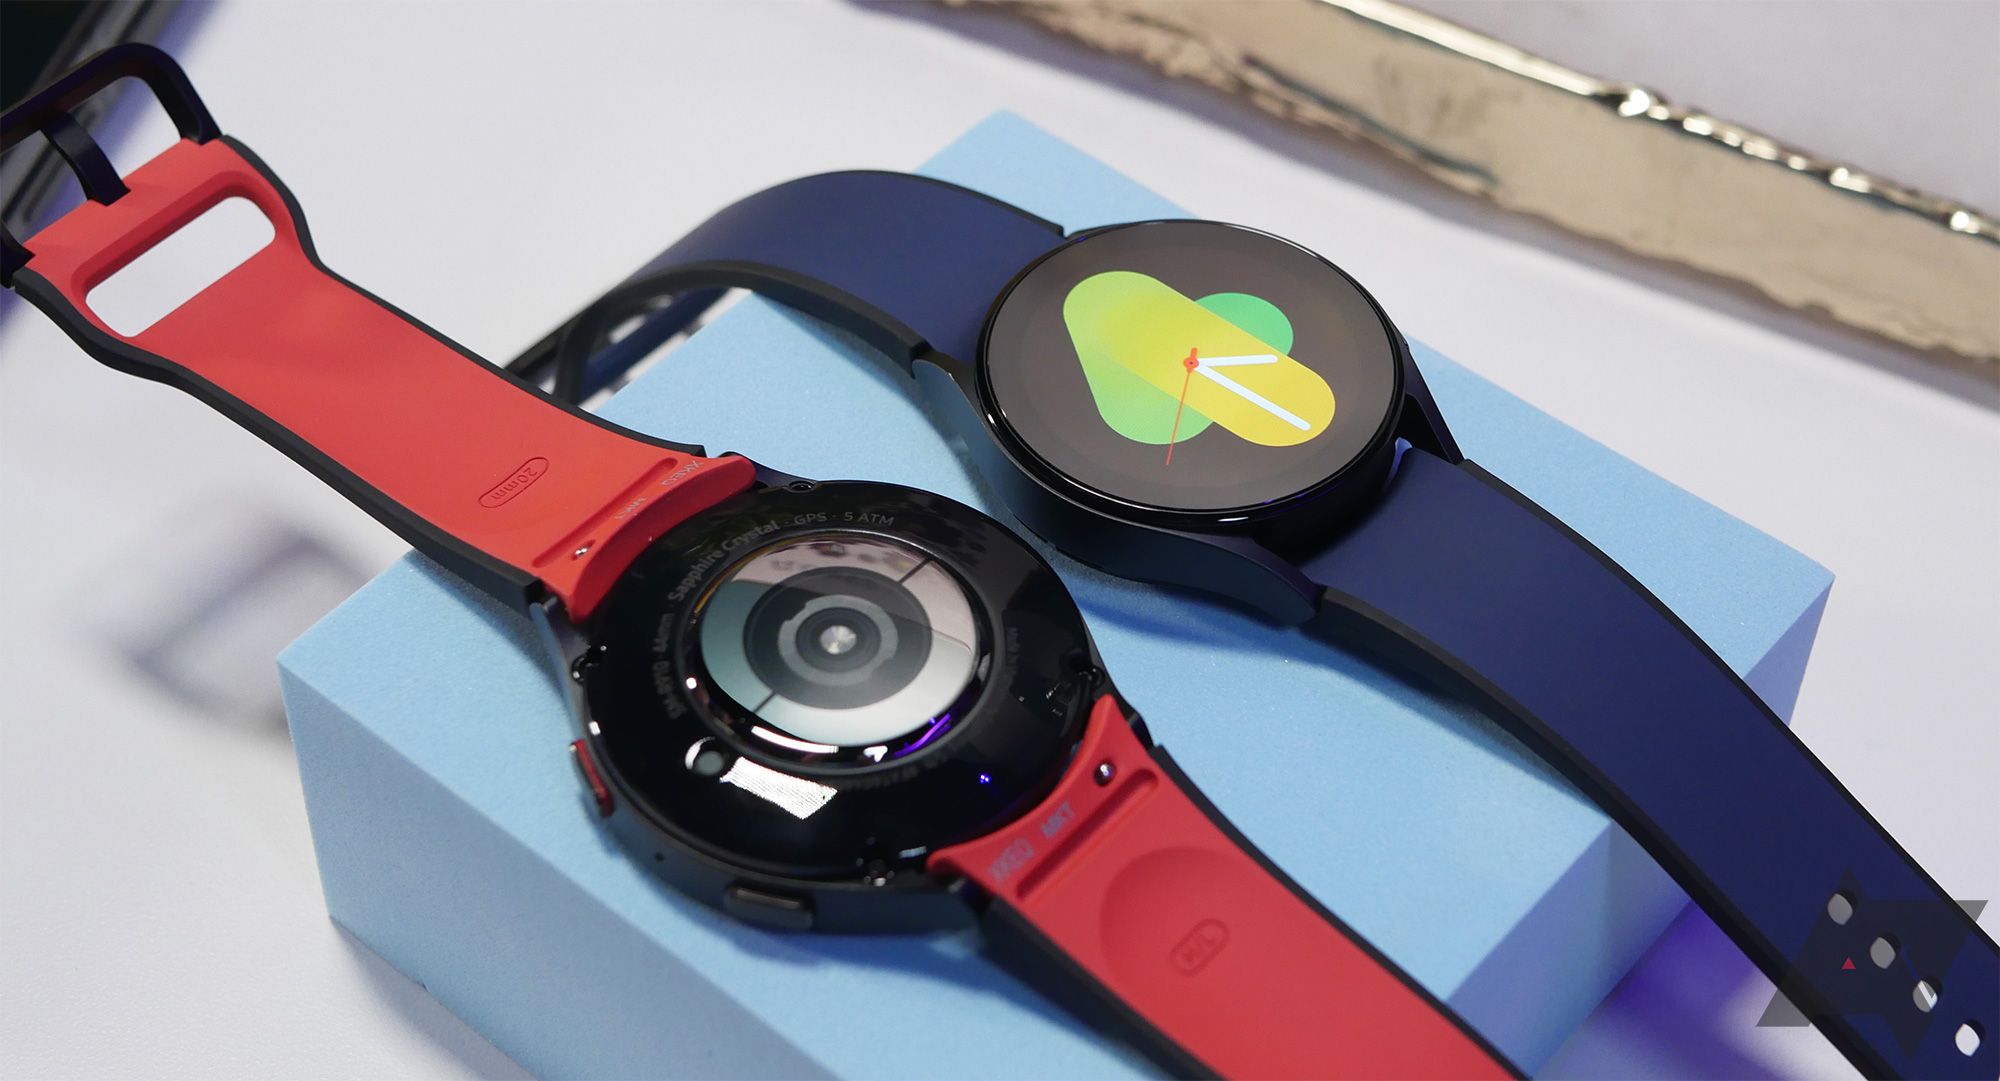 dois smartwatches estão em um bloco azul pastel.  Um deles possui display iluminado;  o outro está de bruços. 